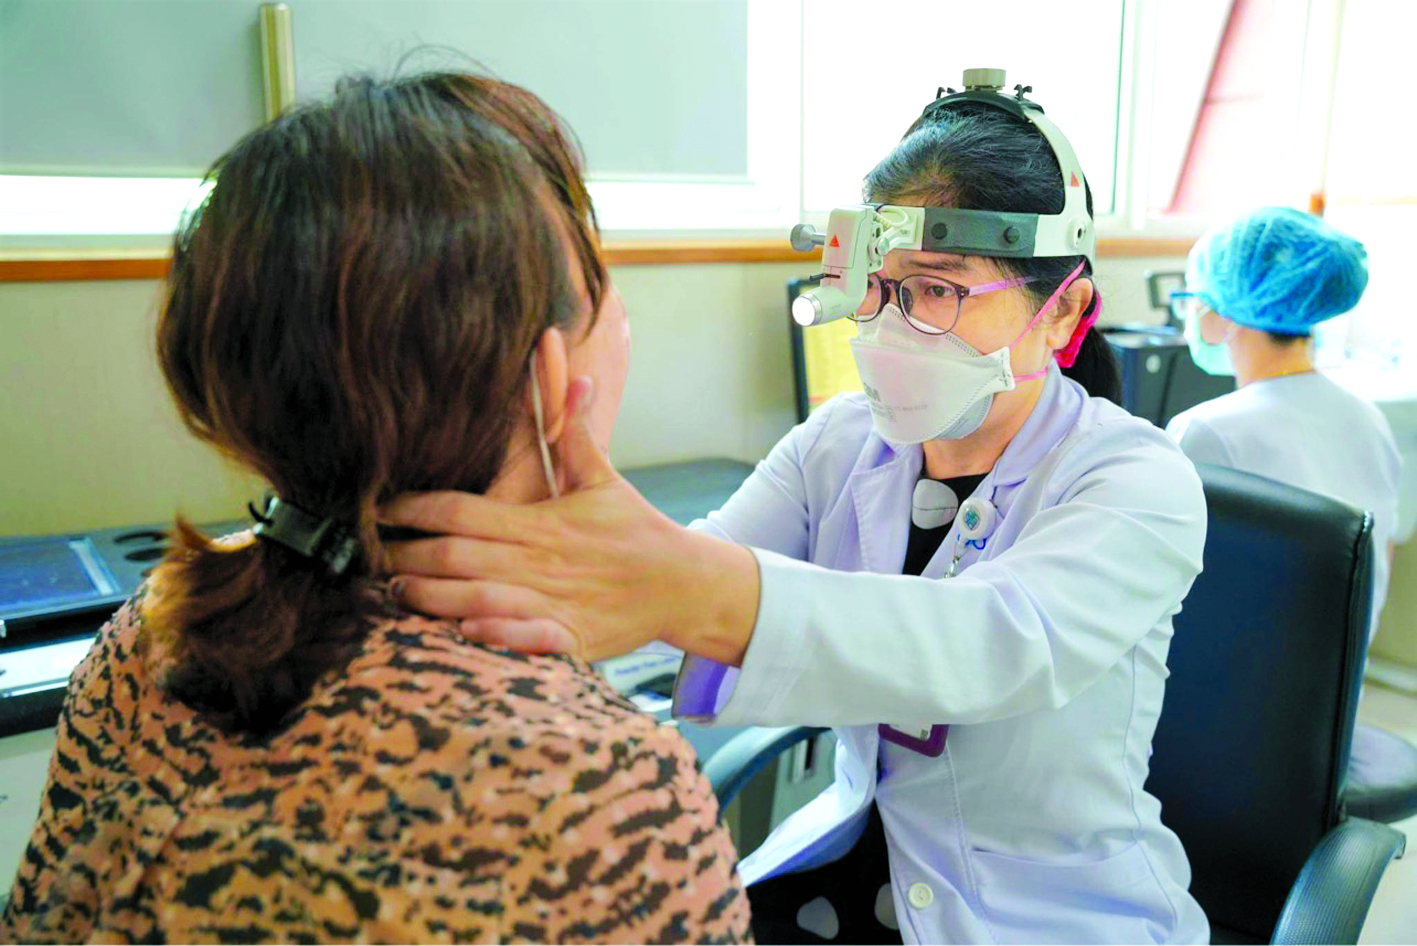 Bác sĩ Văn Thị Hải Hà đang khám cho một trường hợp bị sưng đau họng kéo dài